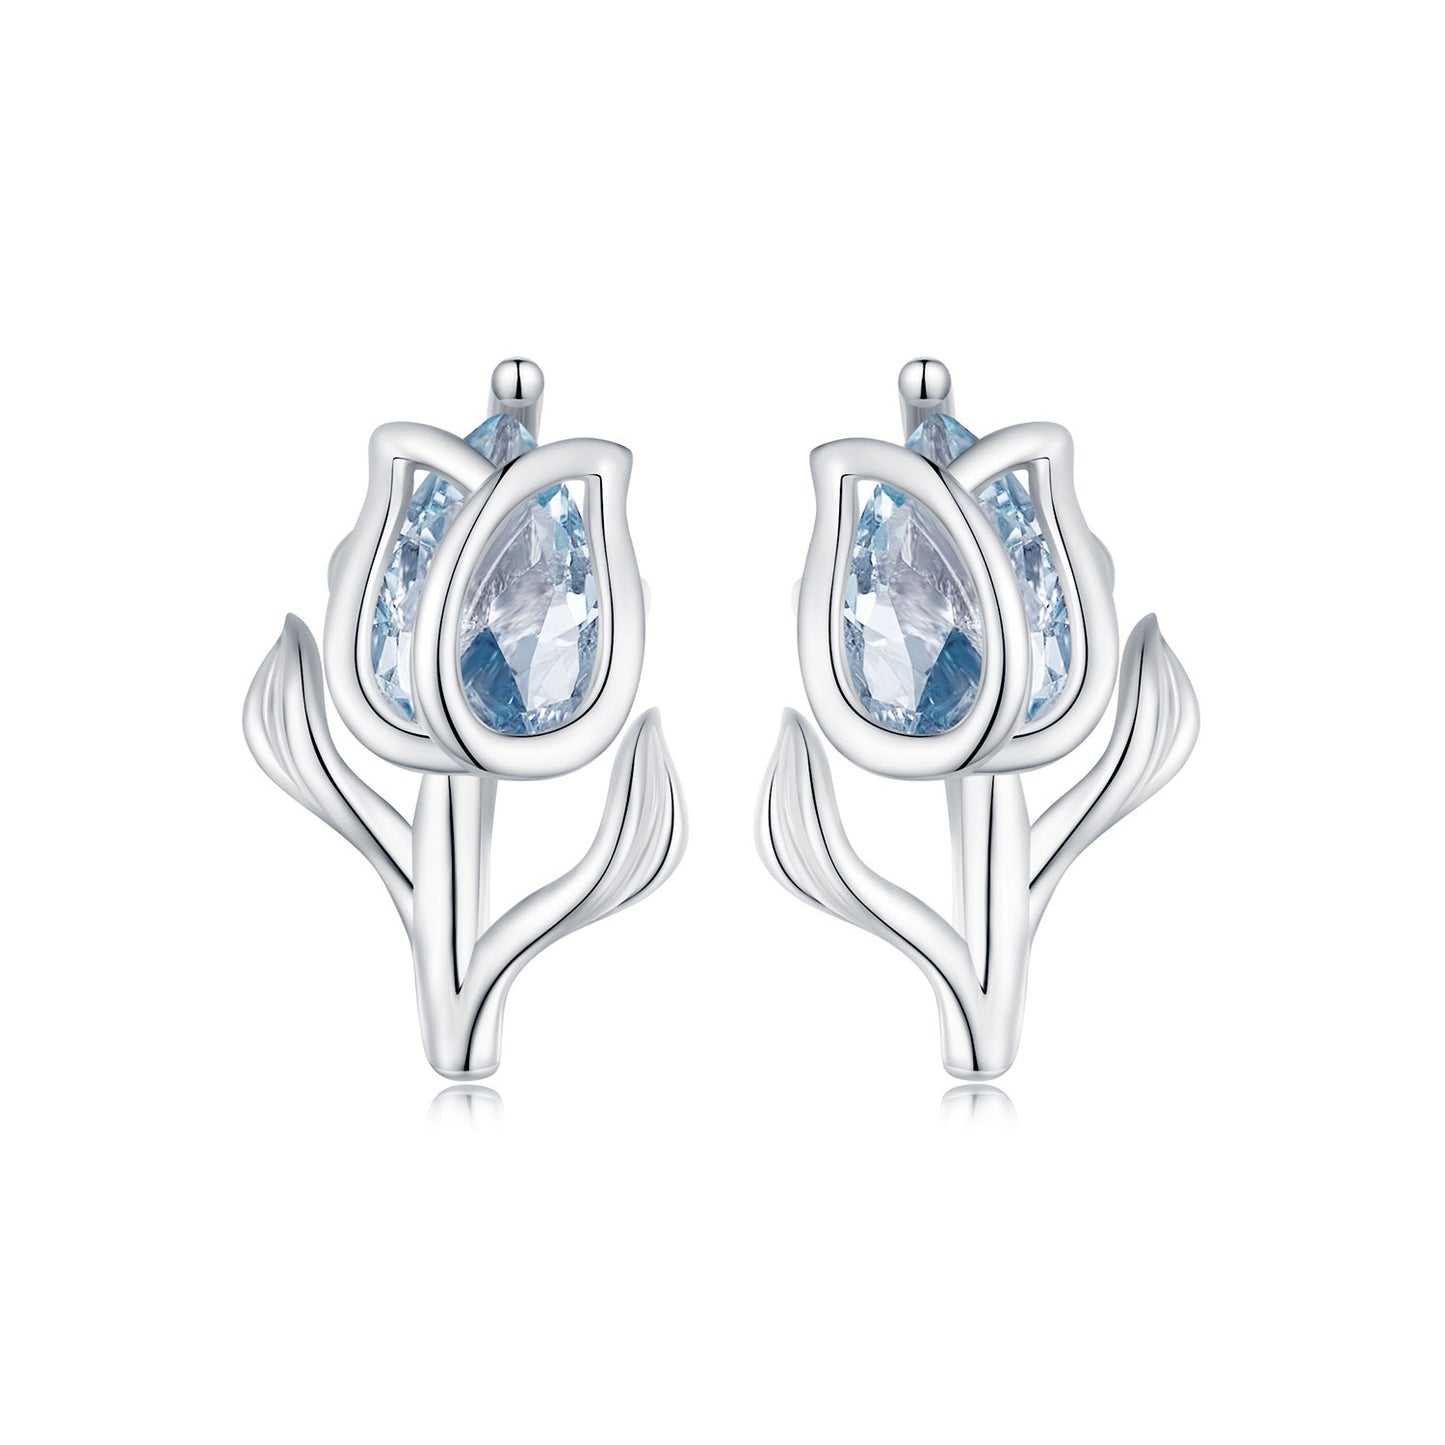 Tulip earrings,  92.5% Sterling Silver,   Zircon ear stud